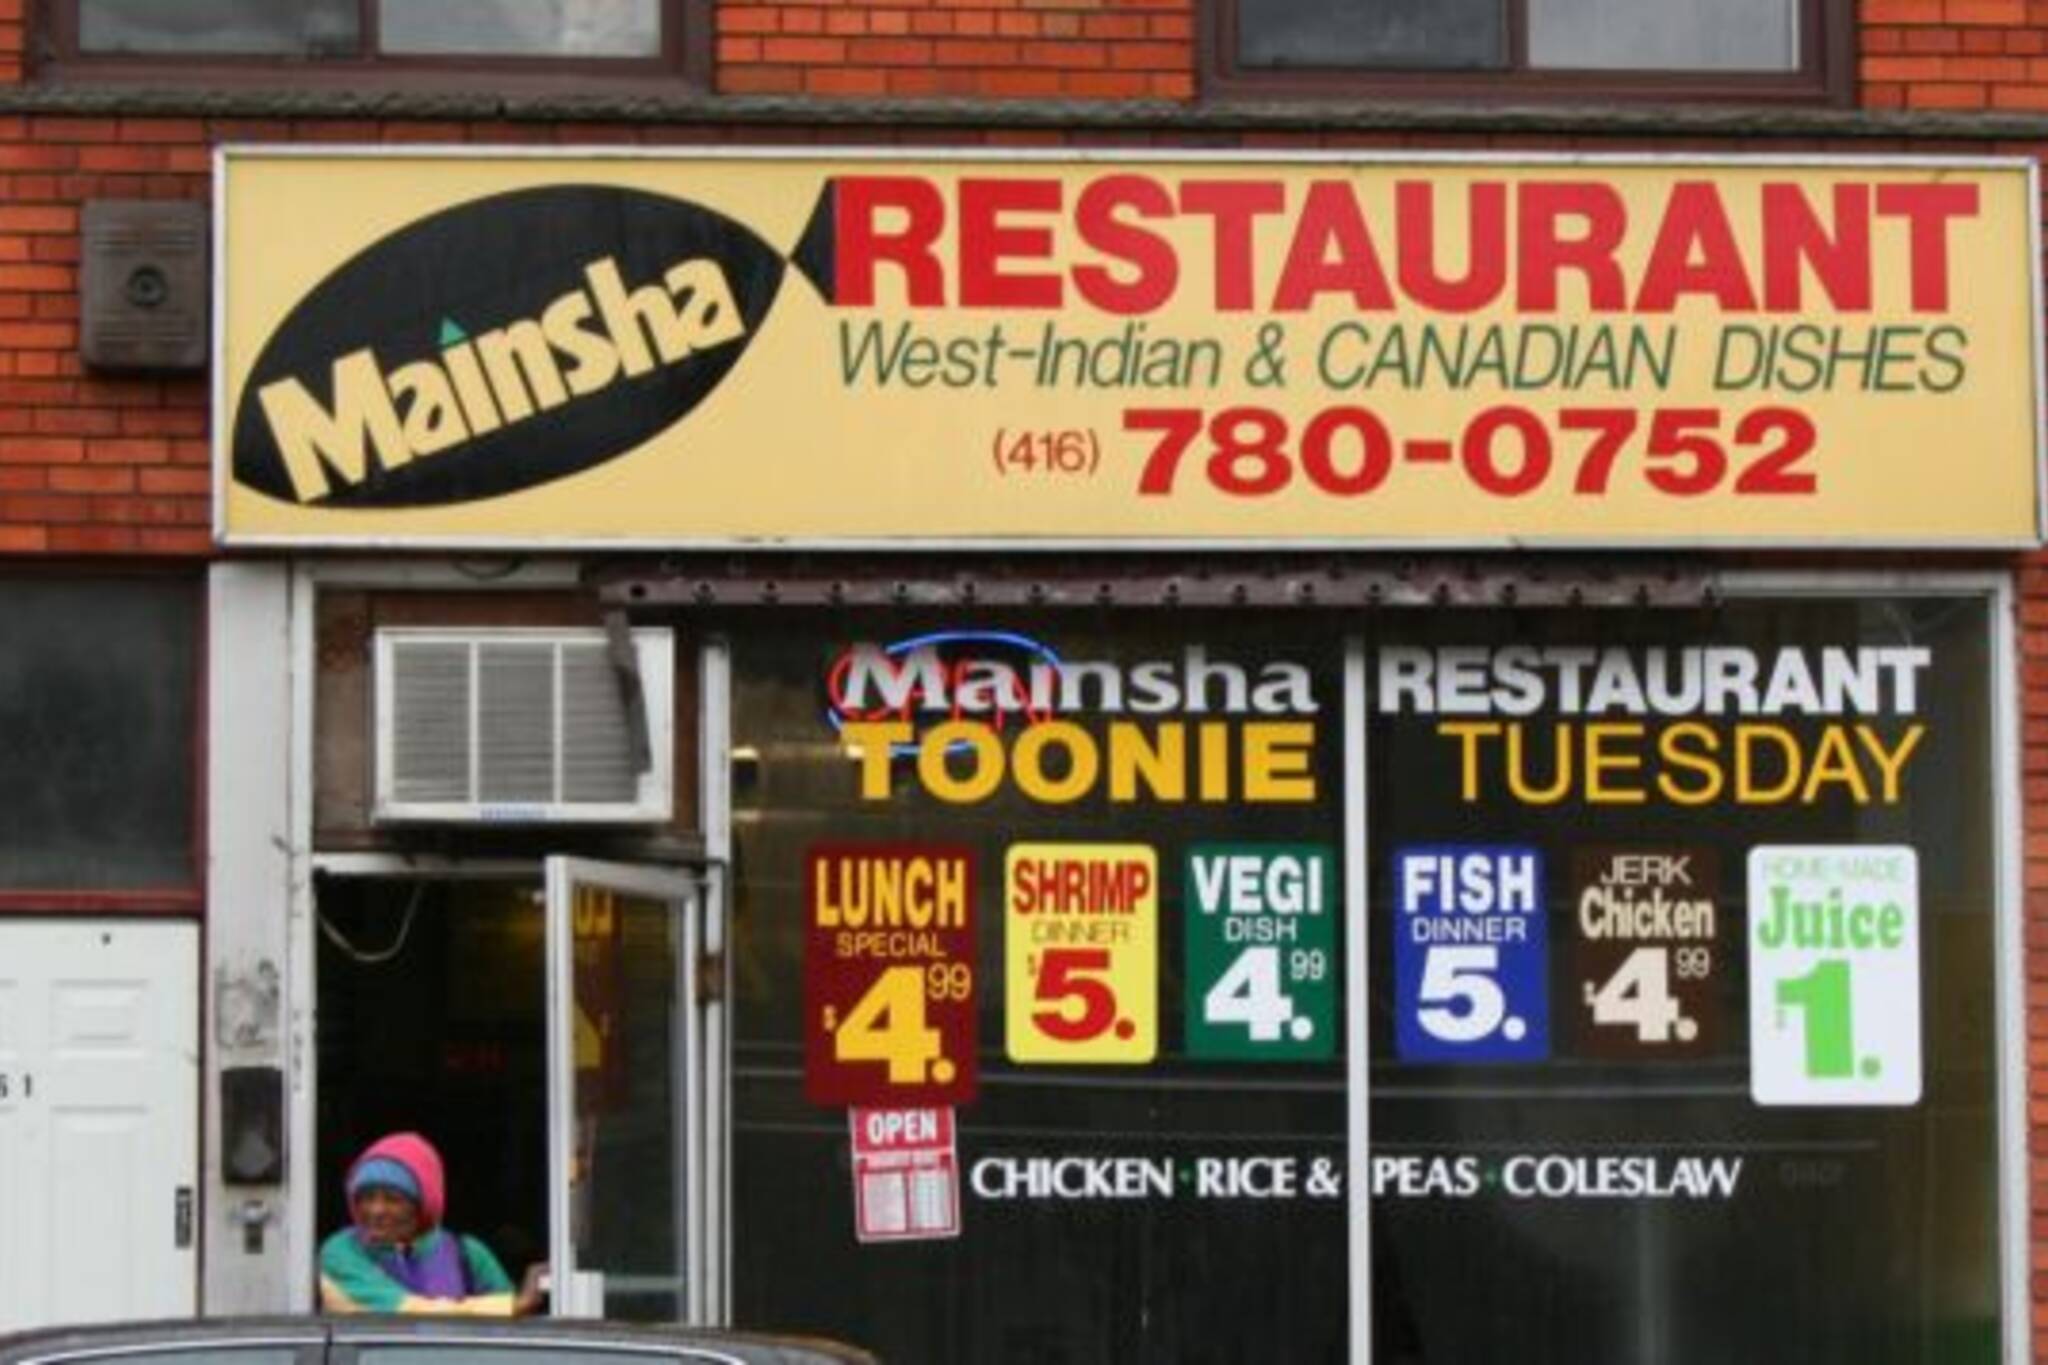 Mainsha Restaurant